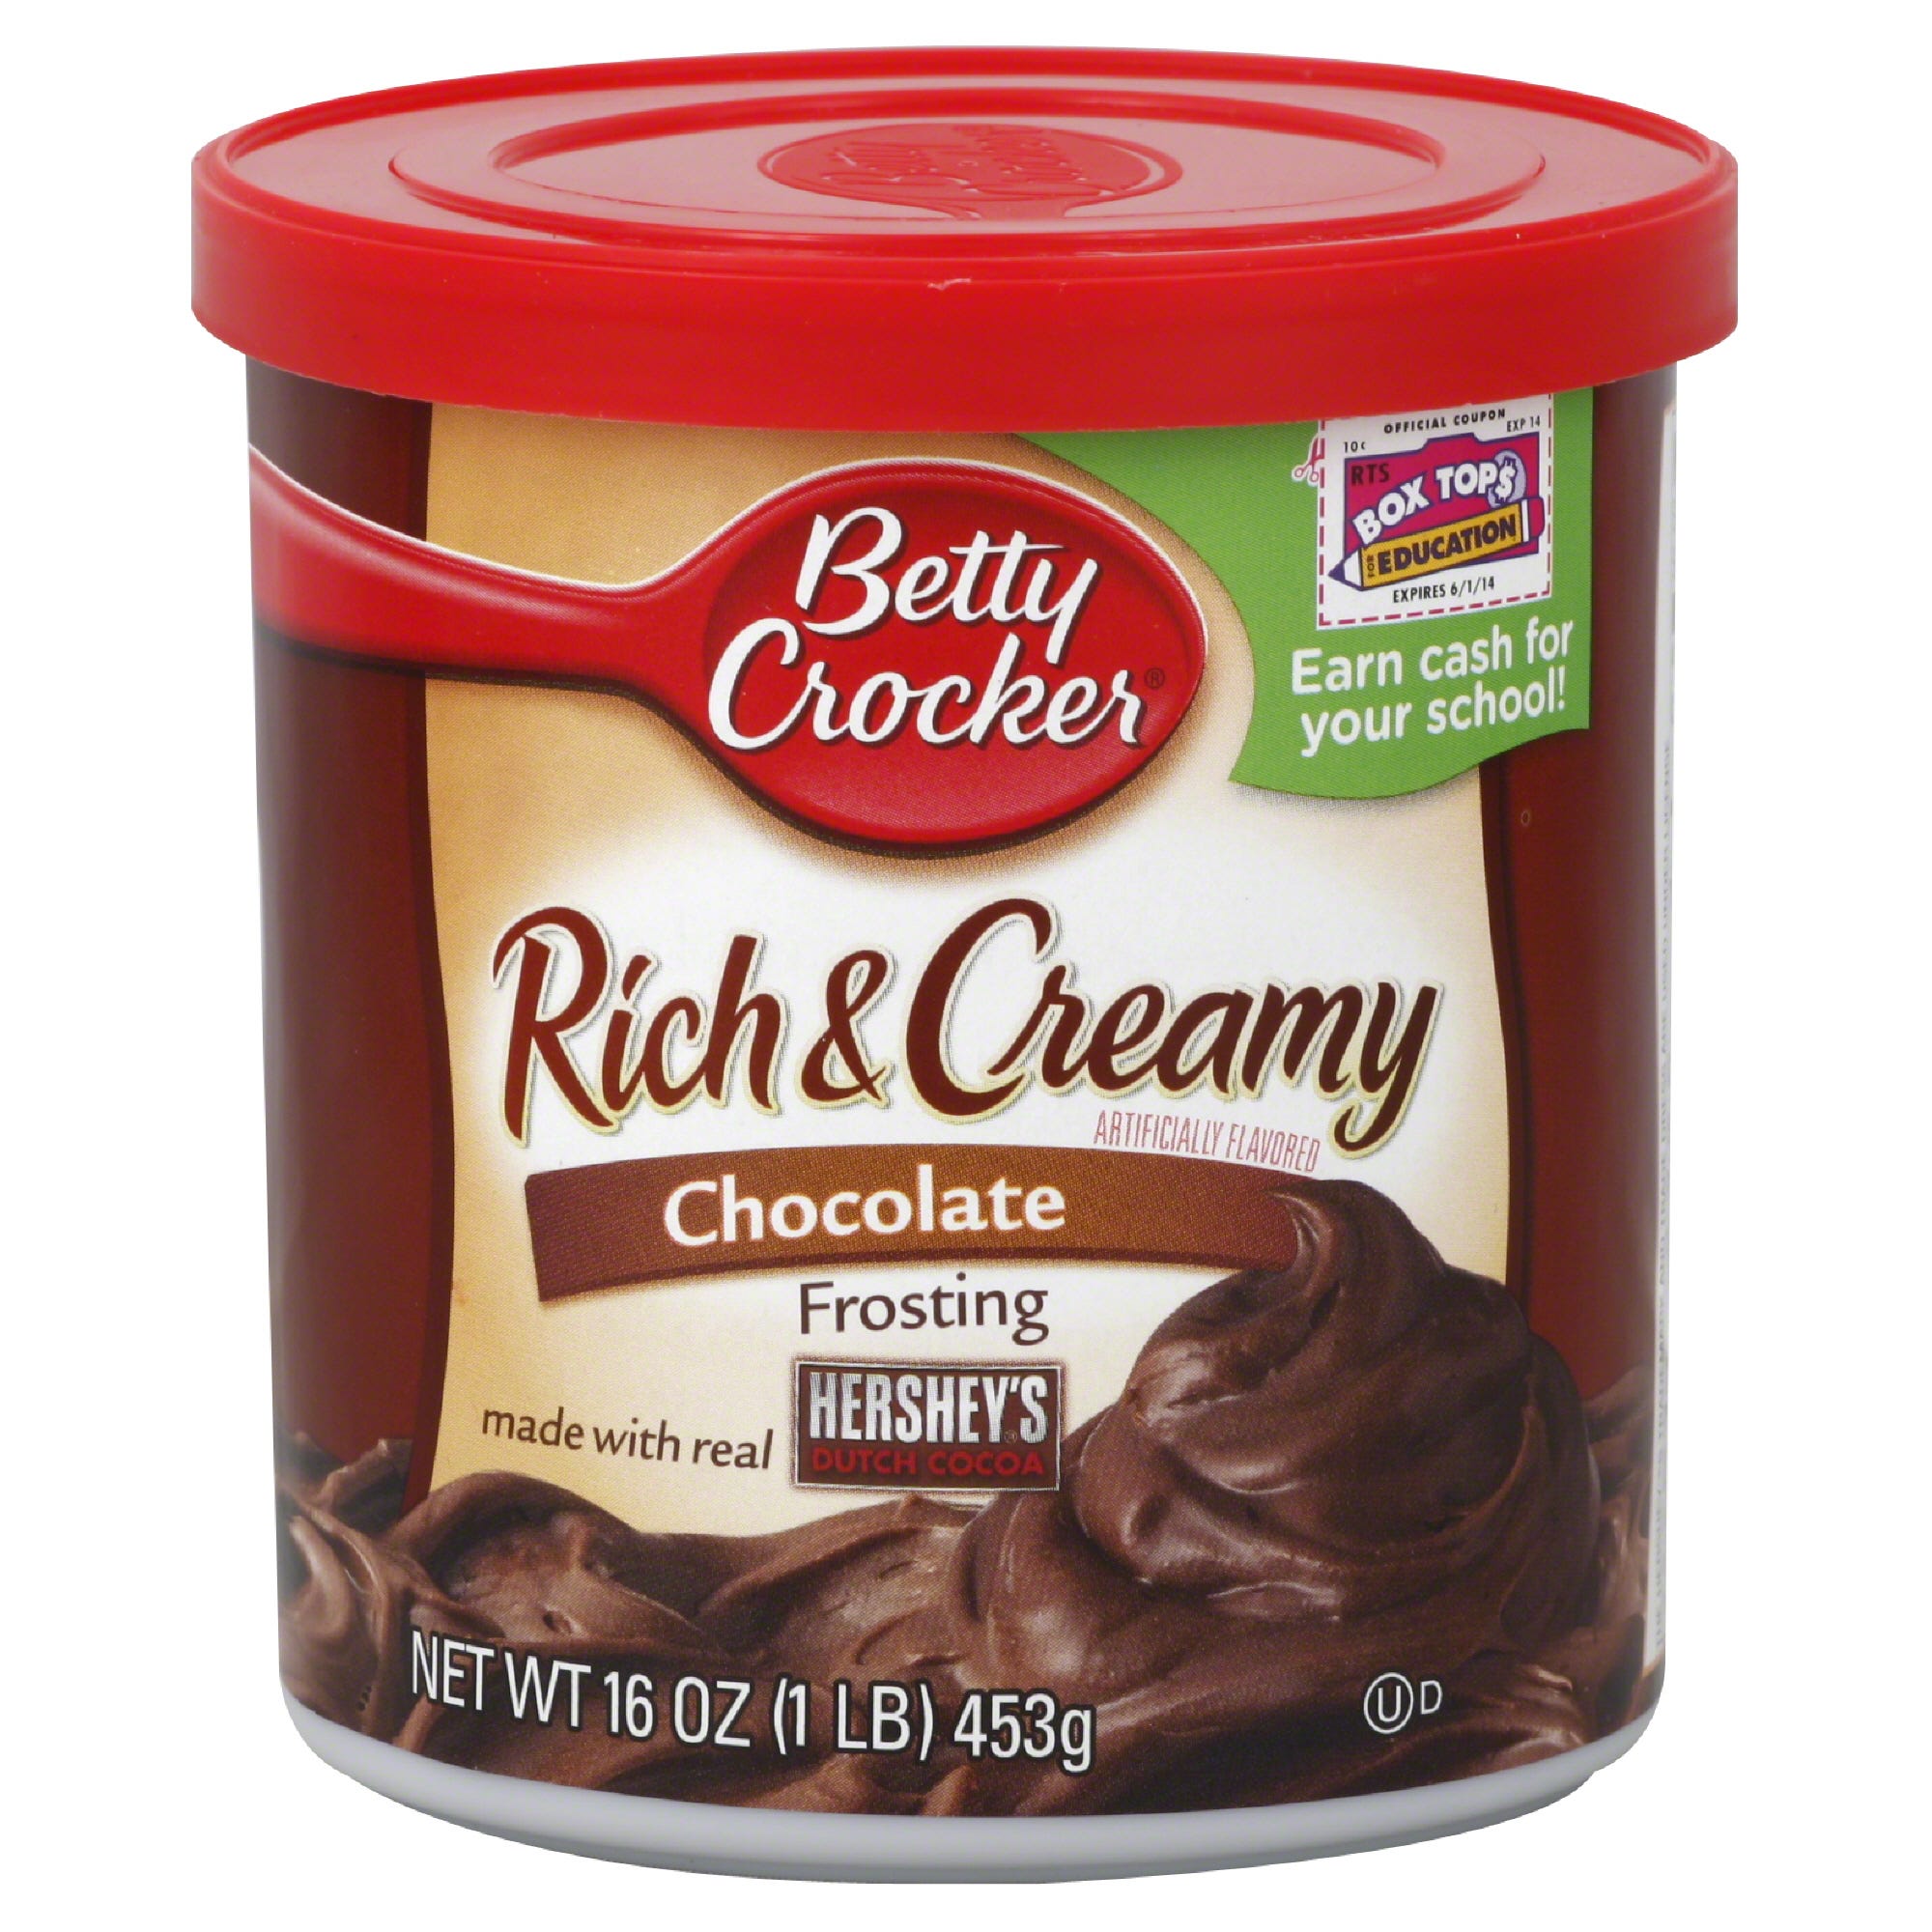 Betty Crocker Rich & Creamy Frosting, Hershey's Chocolate - 16 oz